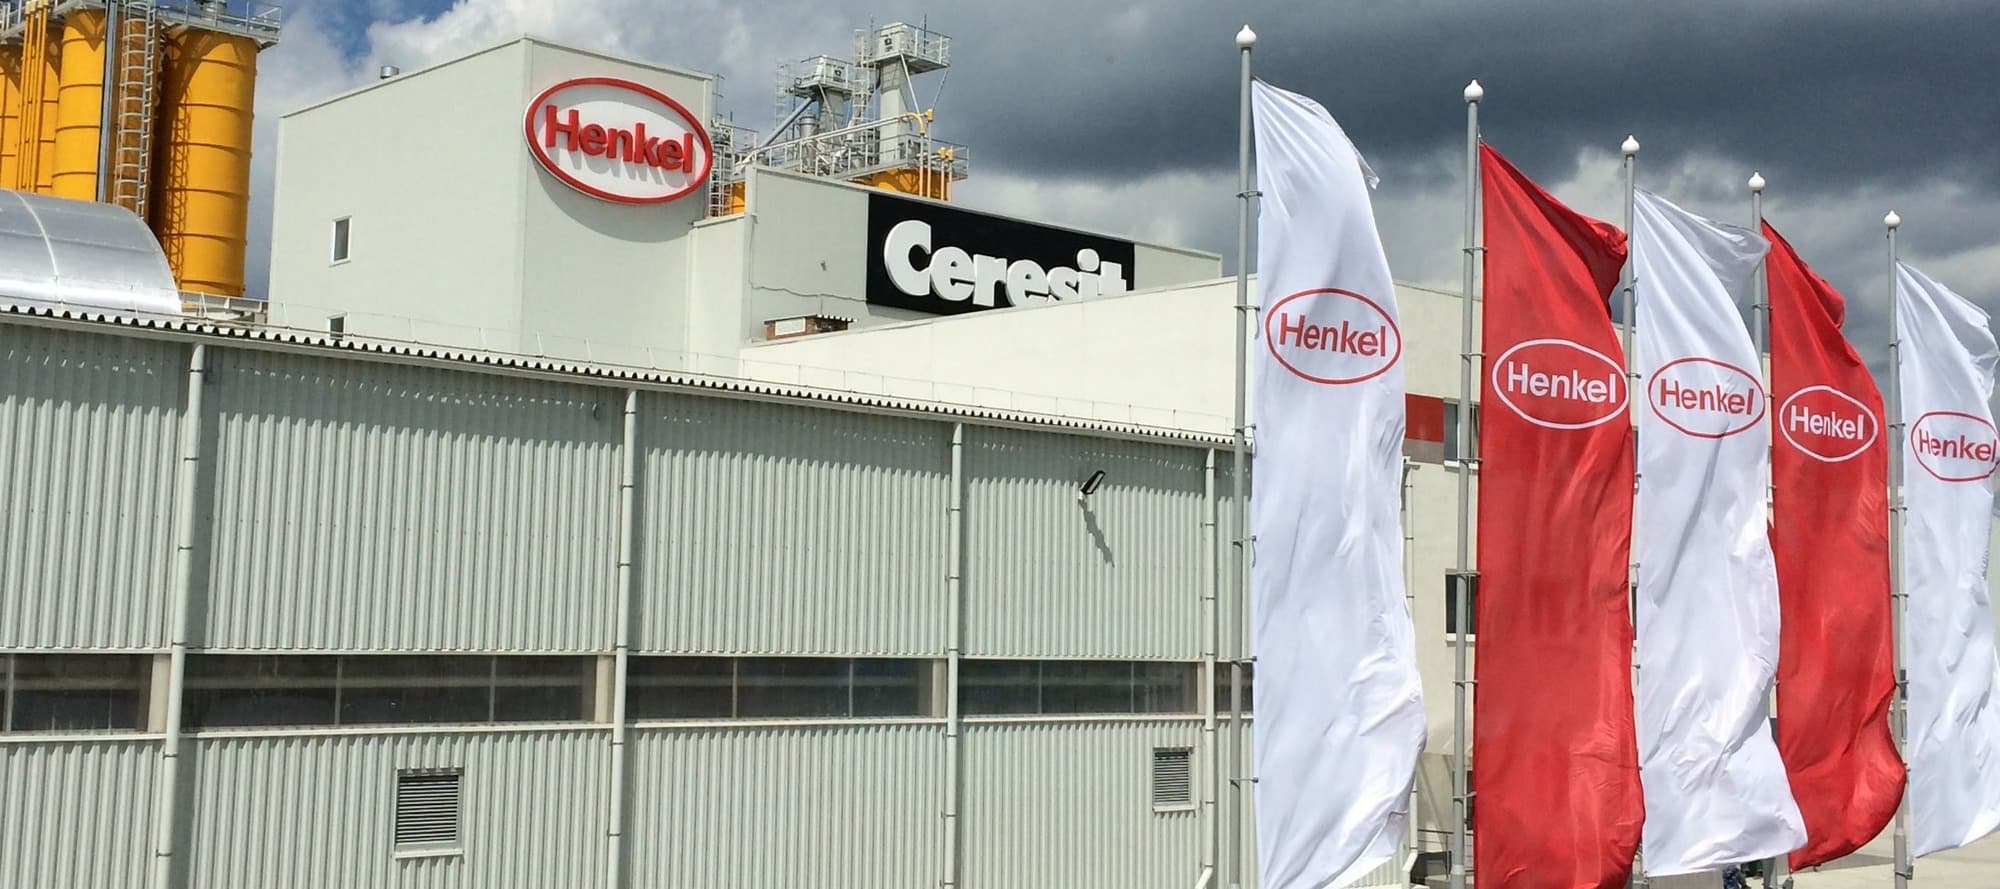 Фото новости: "Российское подразделение Henkel станет самостоятельной компанией"